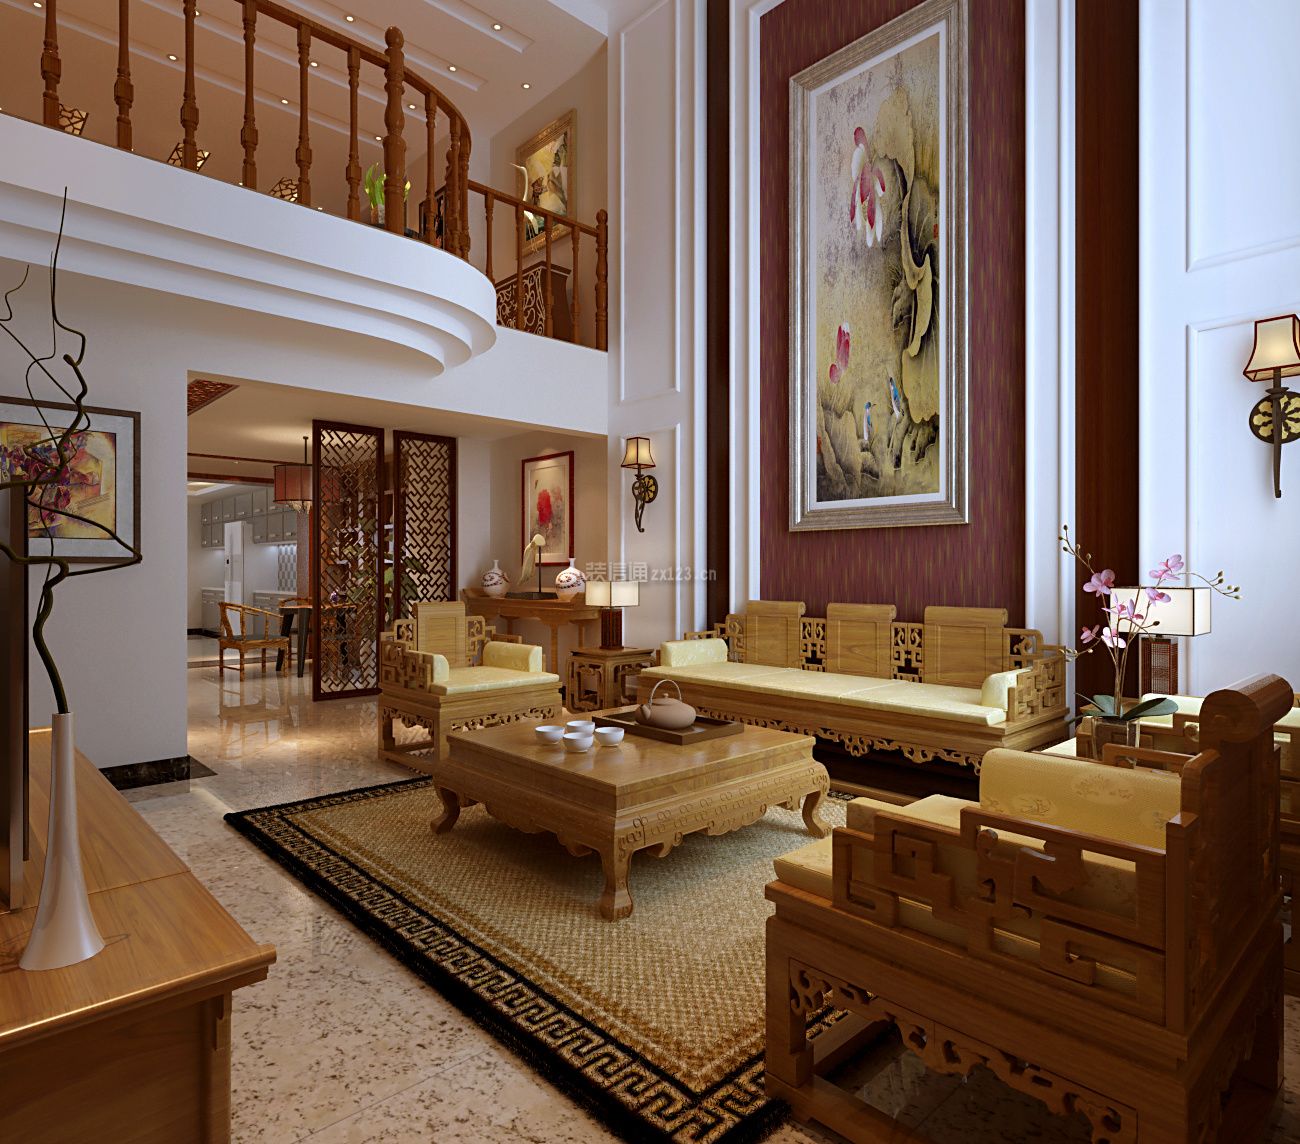 中式别墅客厅吊顶装修效果图 中式别墅客厅设计效果图 